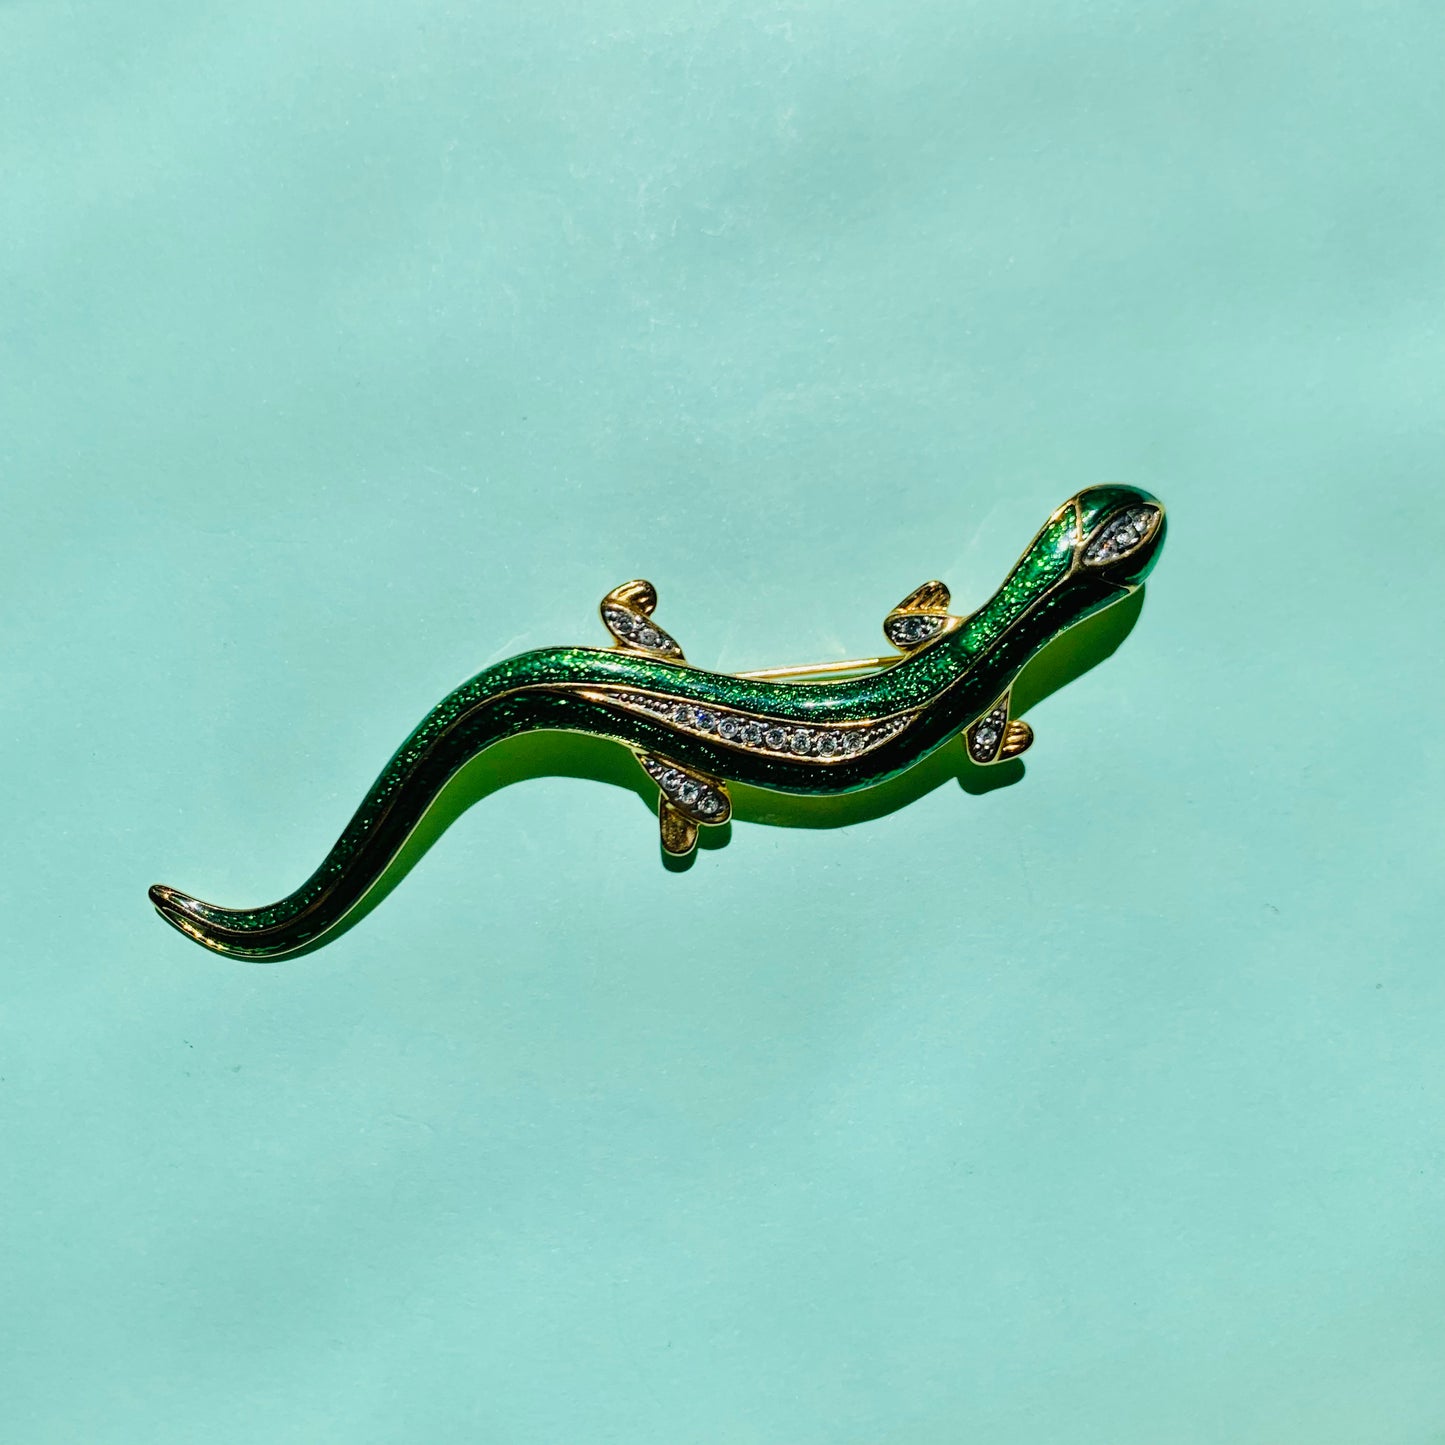 1980s brass enamel green gecko brooch with clear rhinestones